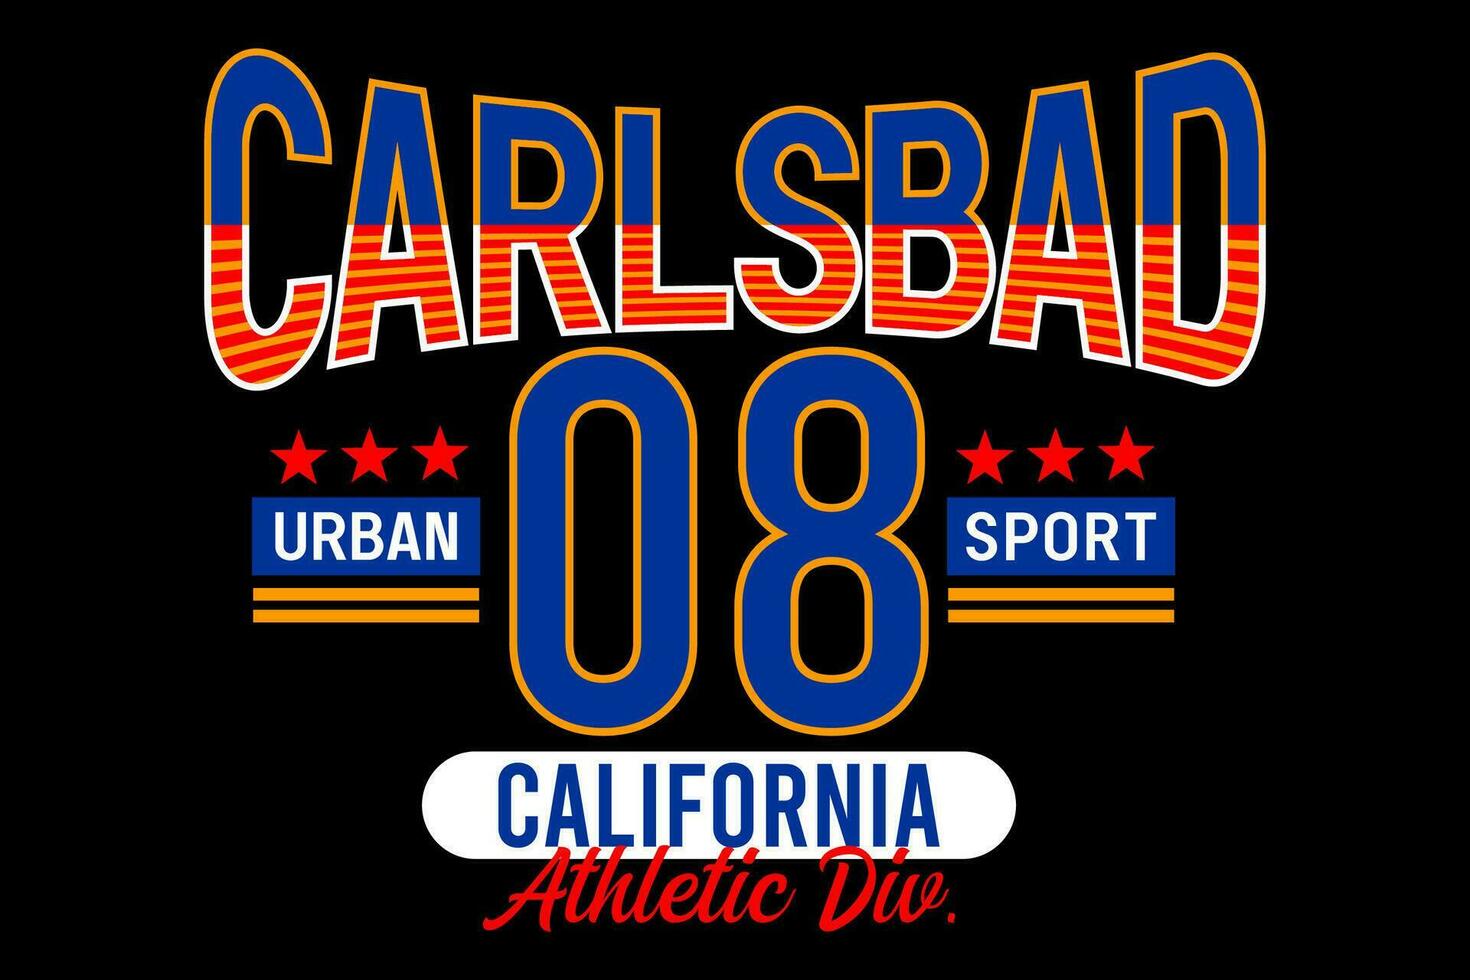 carlsbad California Clásico colega, para impresión en t camisas etc. vector